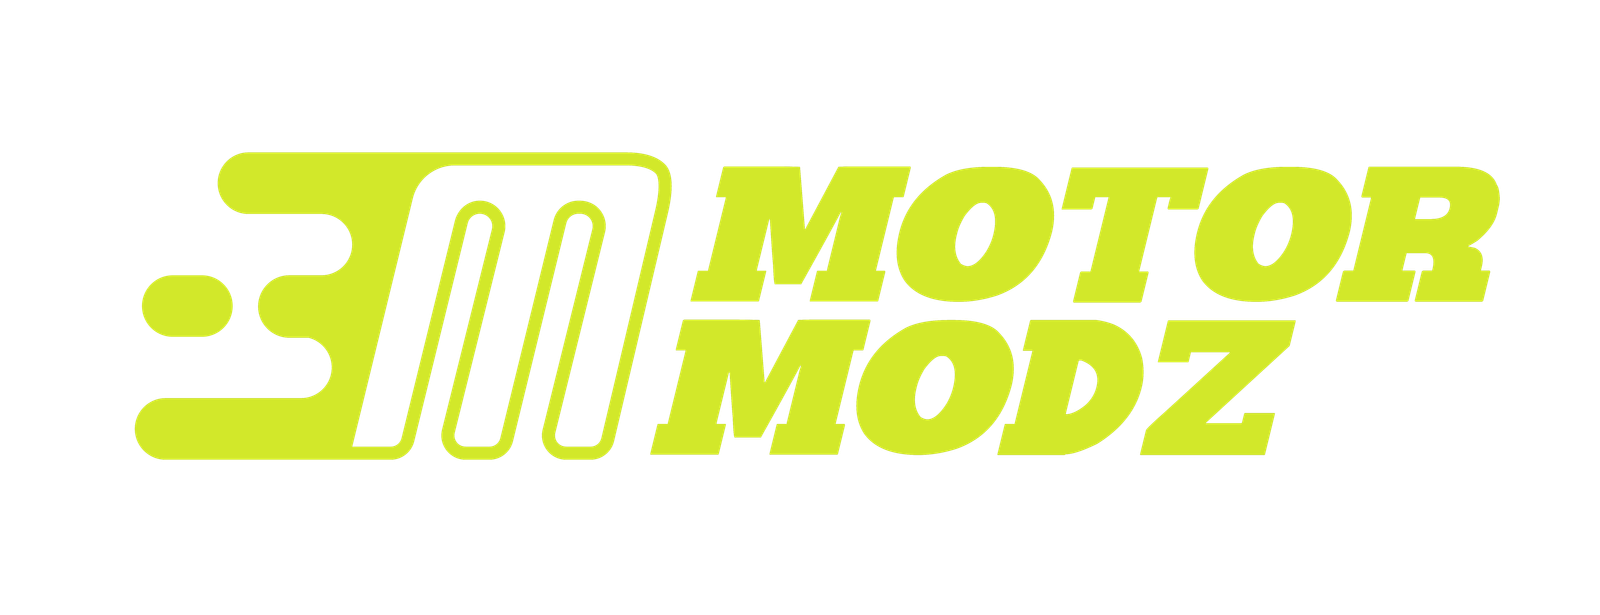 Motor Modz-04 (1)